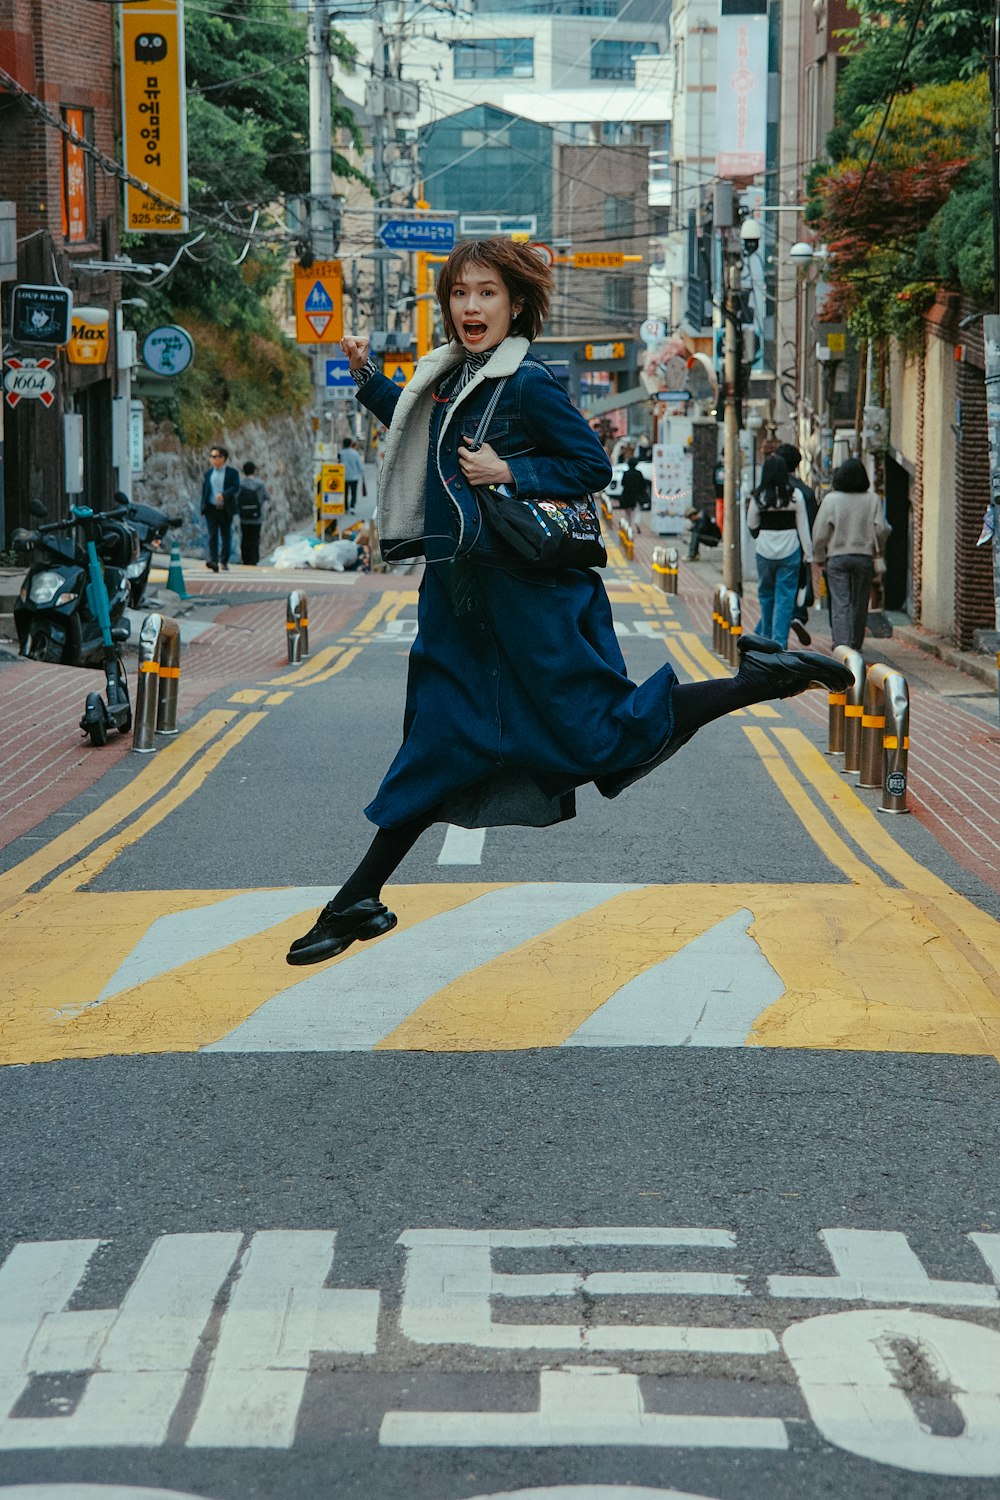 Una mujer saltando en el aire en una calle de la ciudad